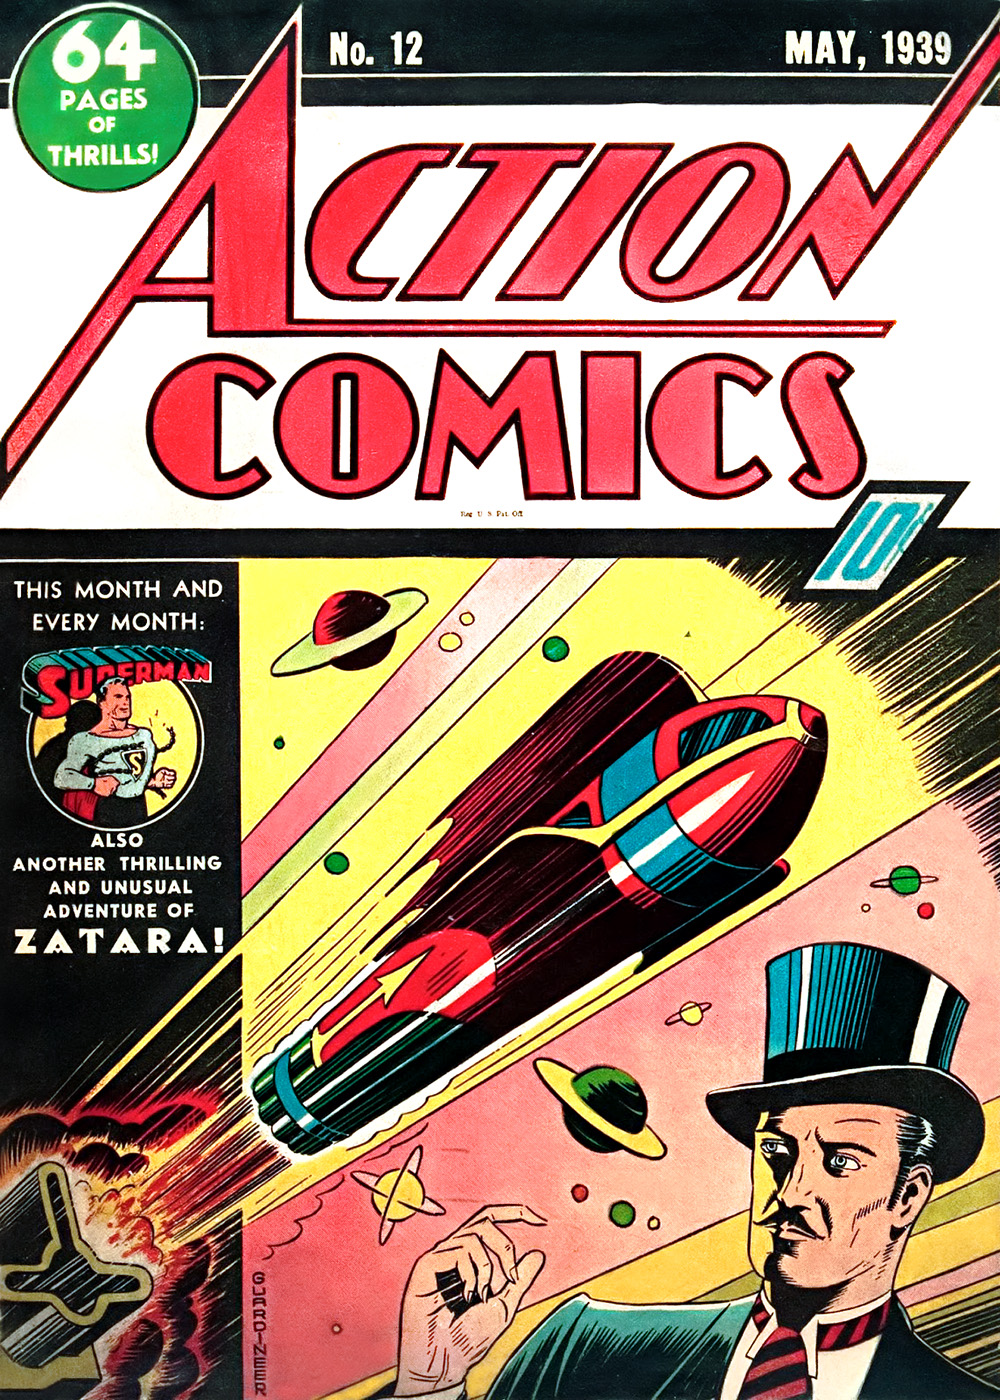 Action Comics Vol. 1 #12